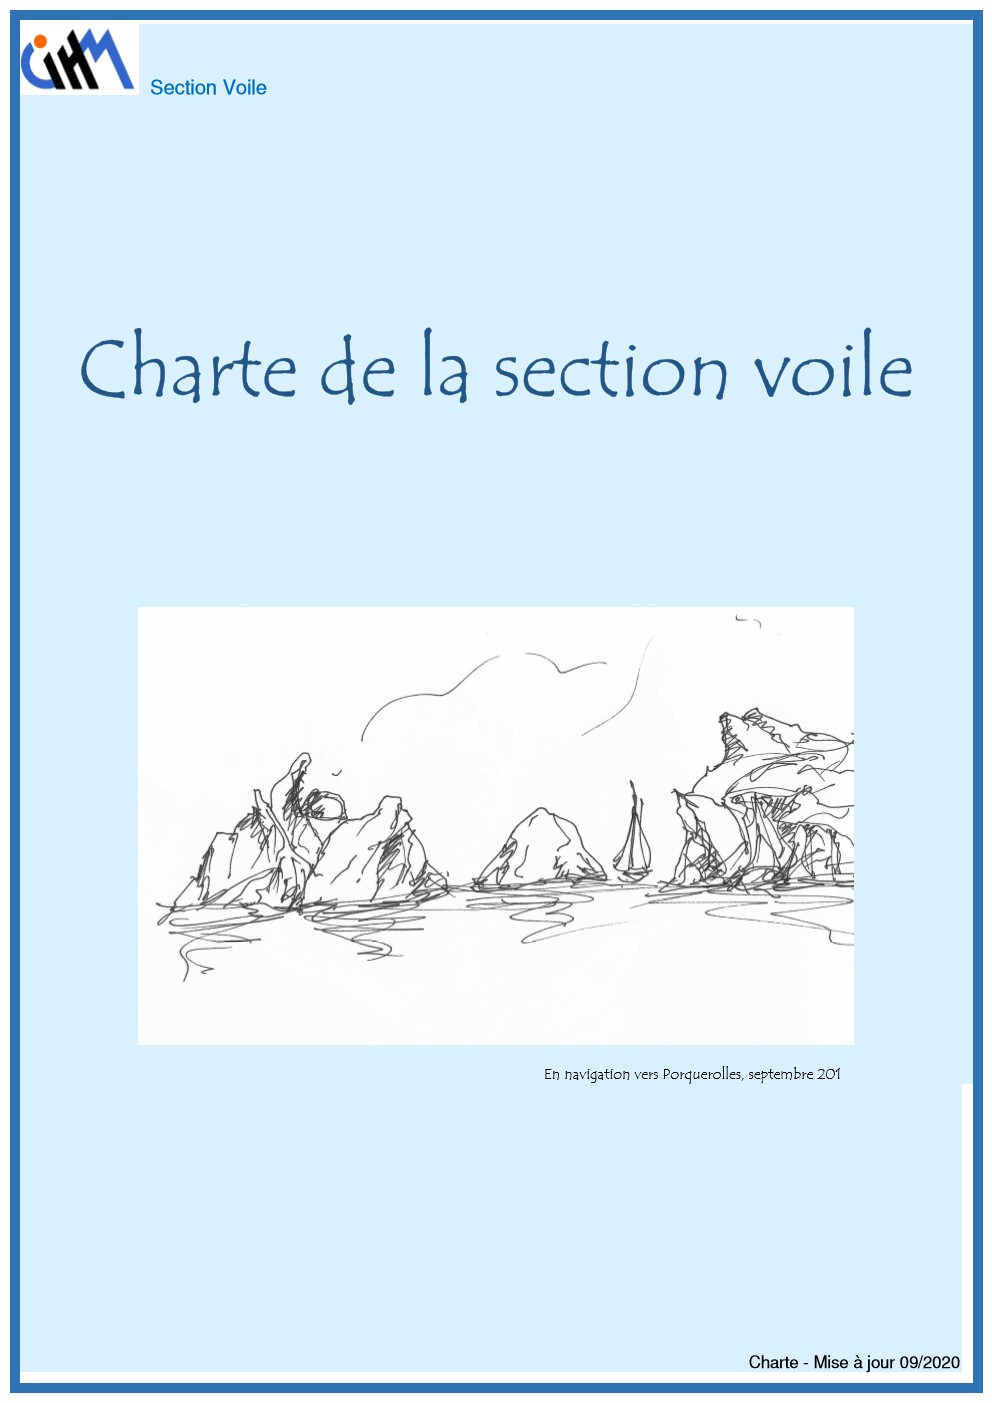 VOILE DocProcédures Version2020 09 CharteVoile TitreBorduré